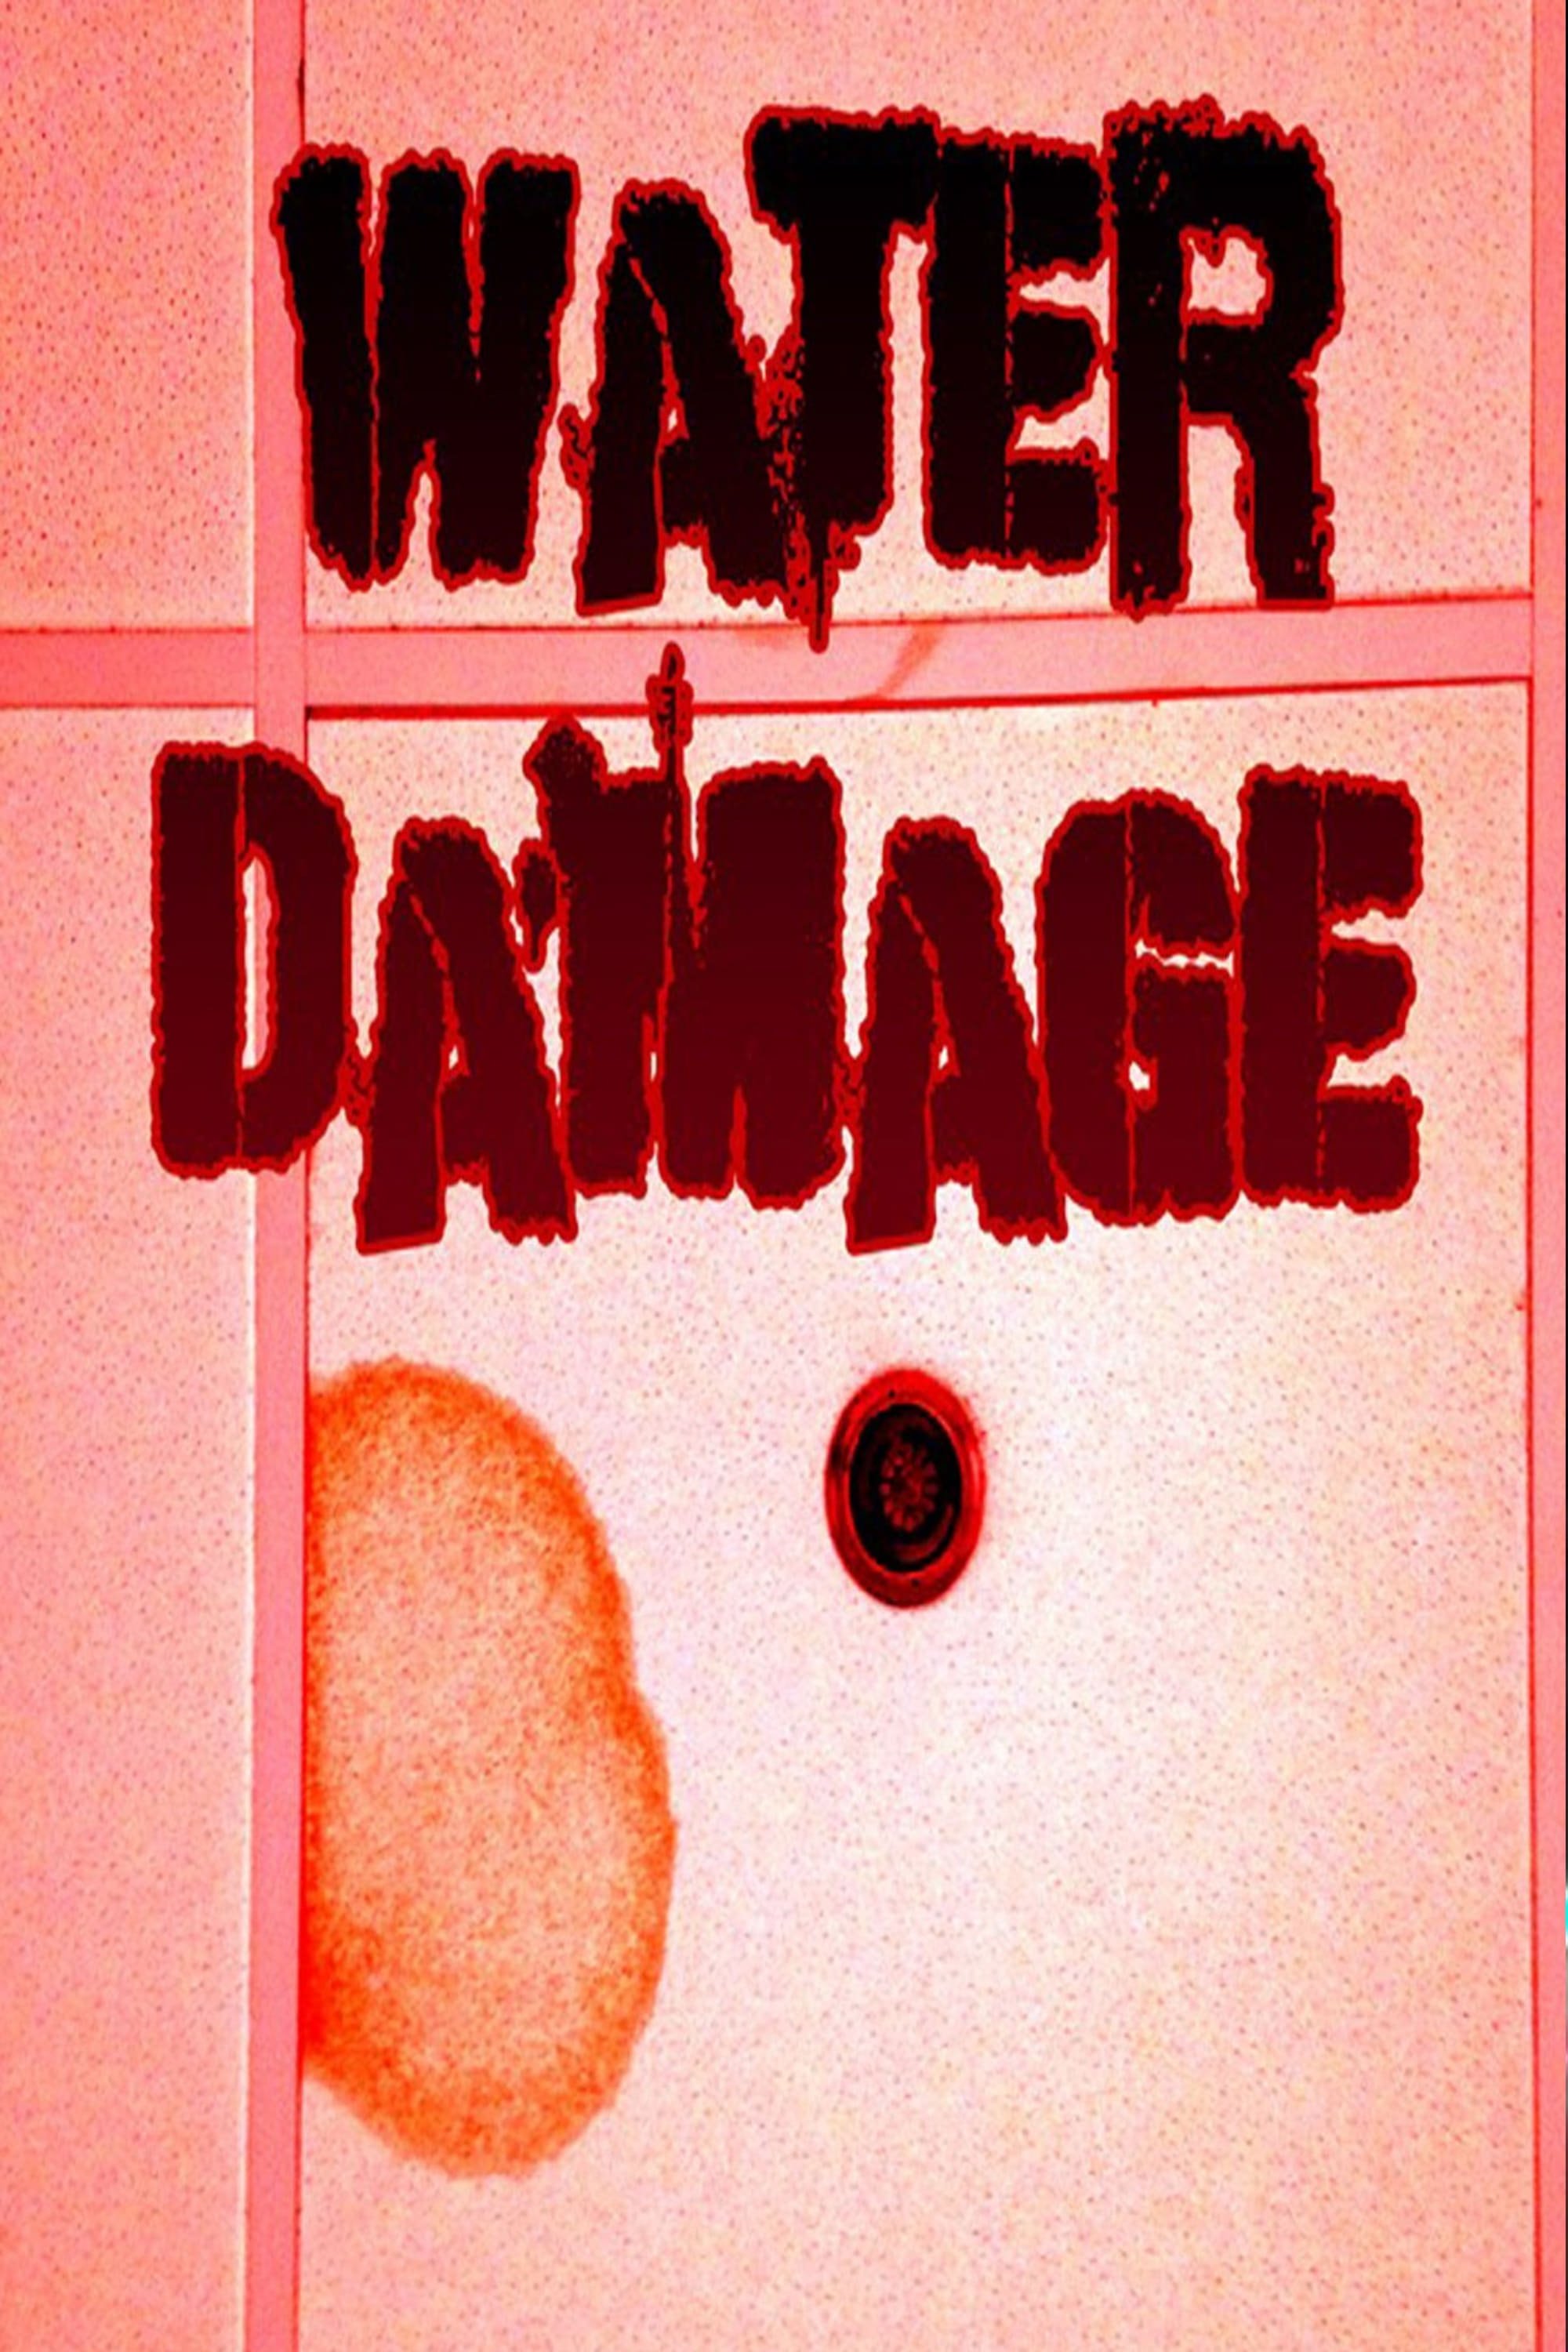 Water Damage